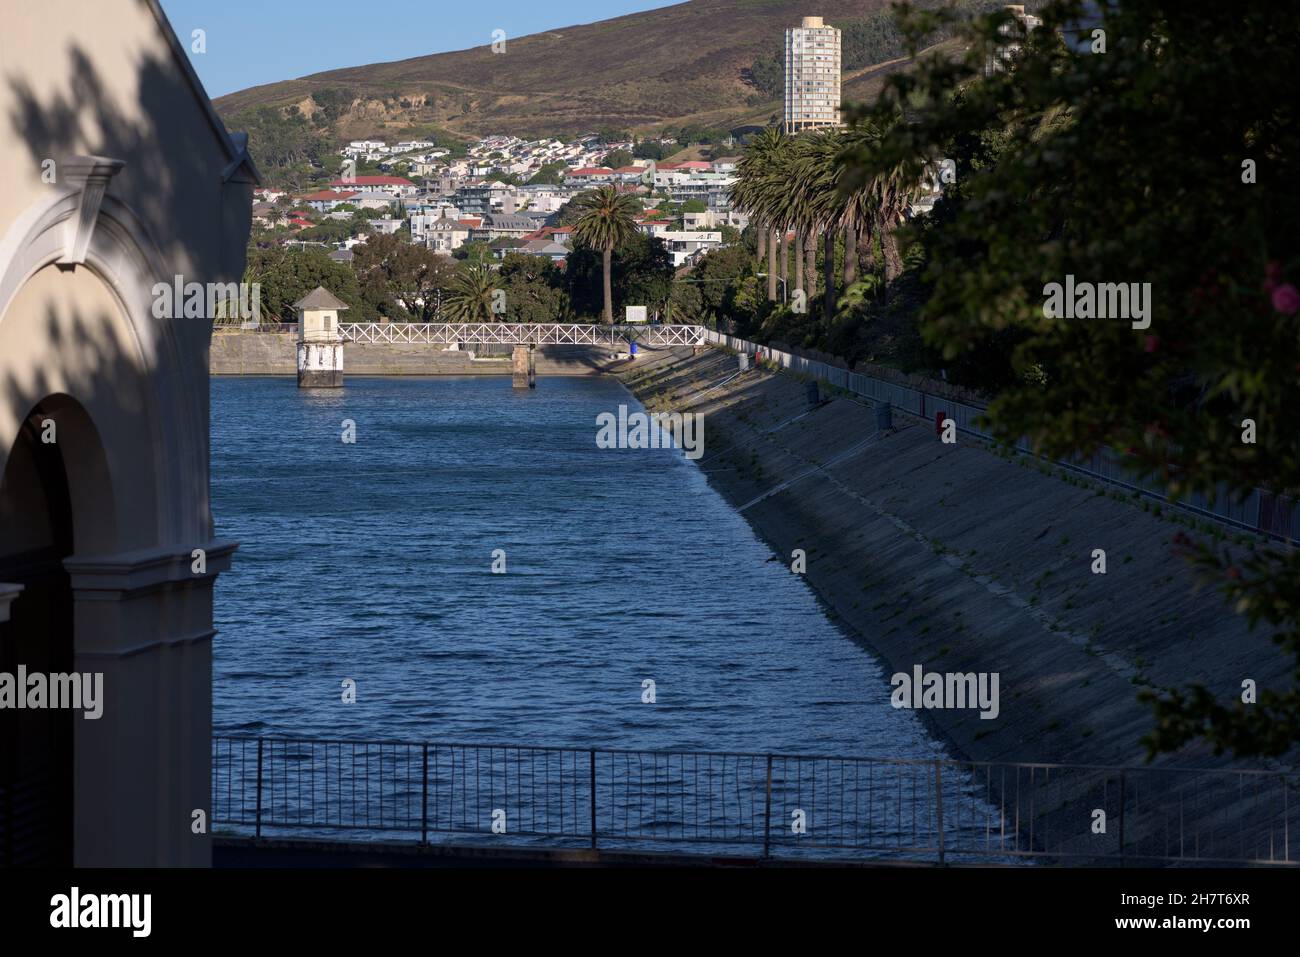 Il lago artificiale di Molteno nella città sudafricana di Città del Capo. La scarsità d'acqua ha visto la città quasi esaurire l'acqua negli ultimi anni a causa della siccità Foto Stock